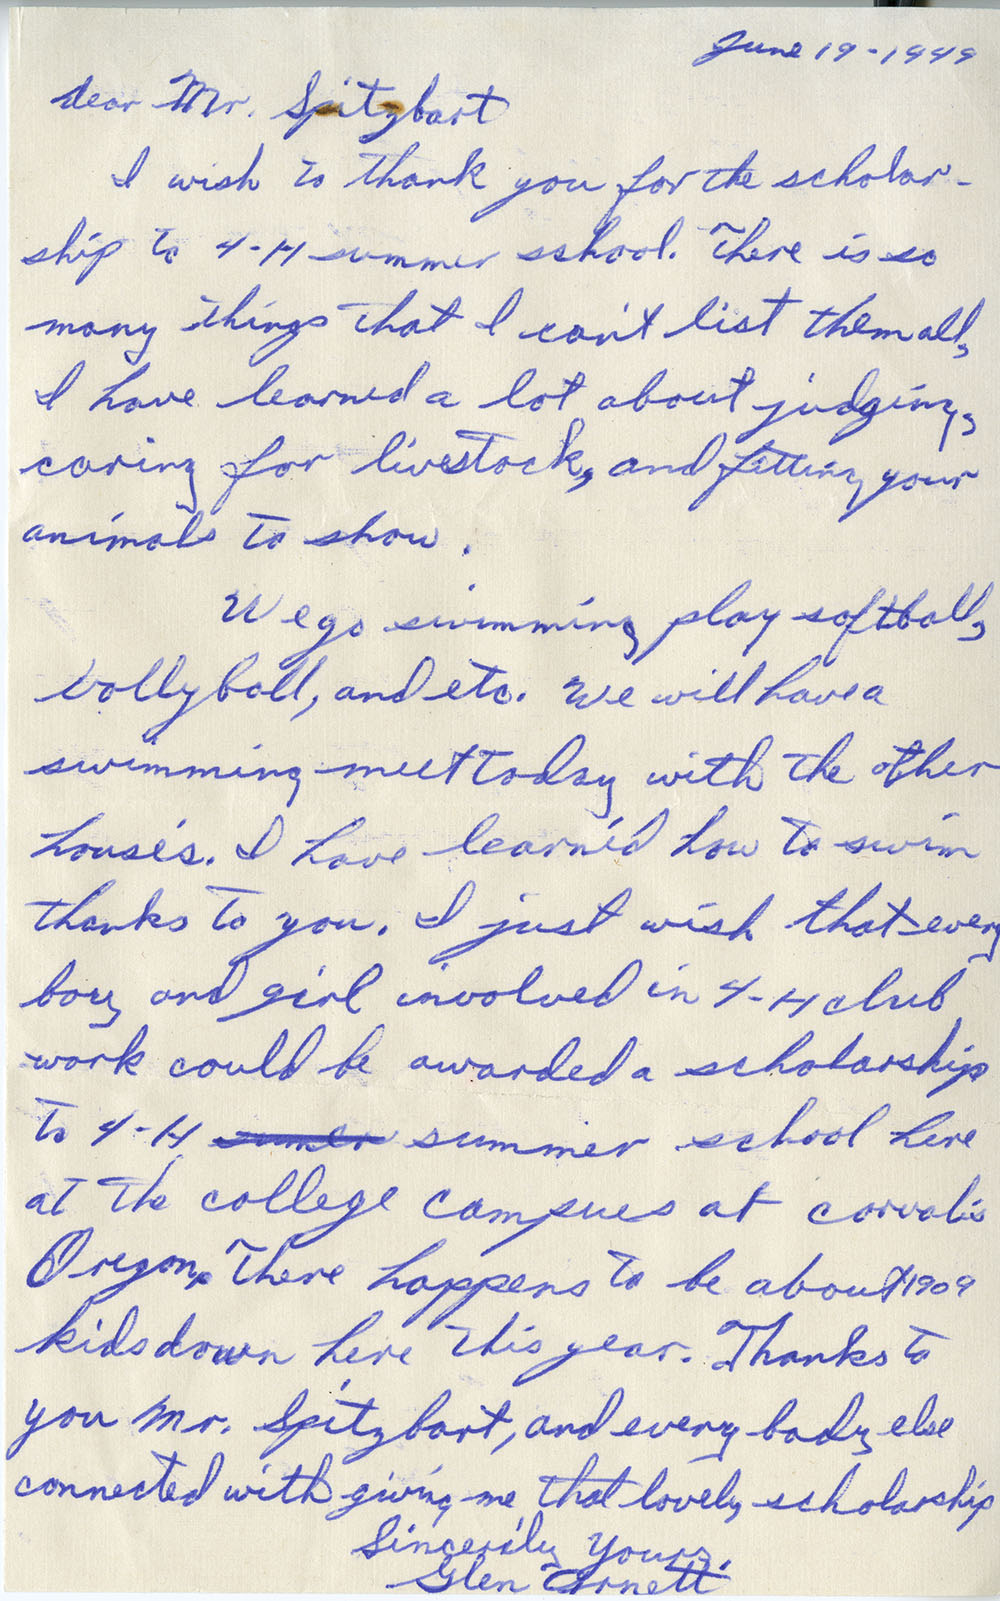 A letter from Glen Arnett to Leo Spitzbart